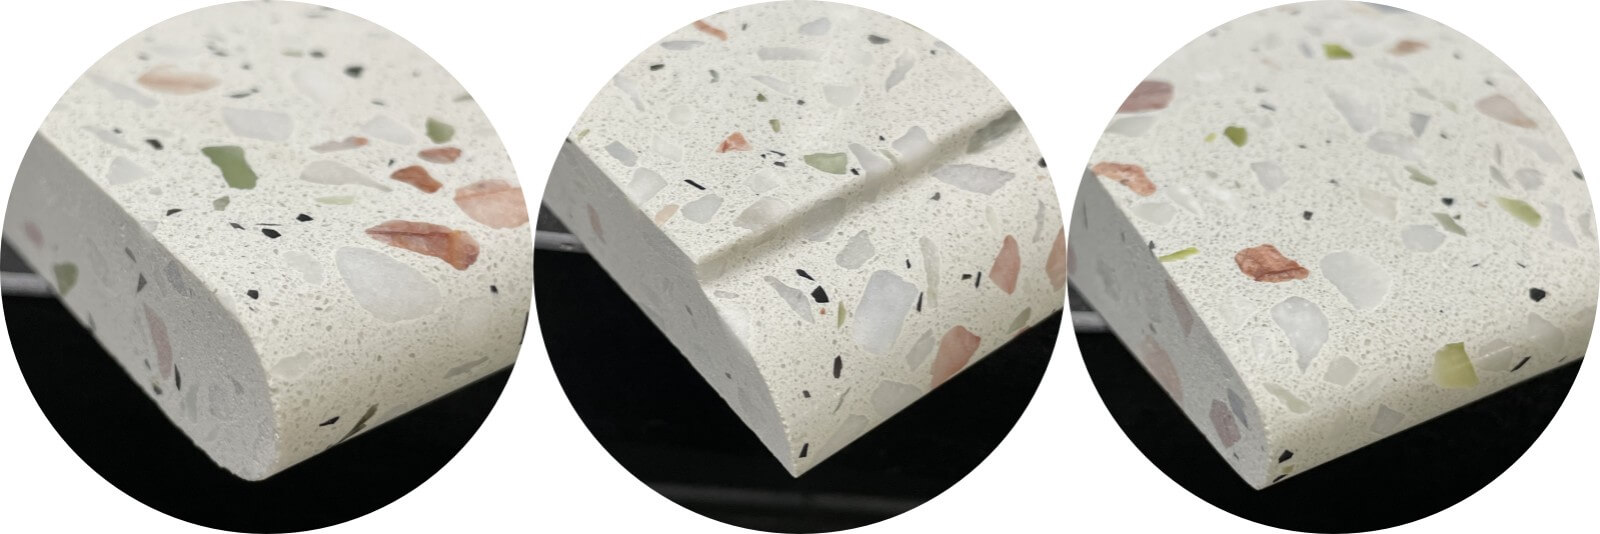 Quartz Stone, Marble & Grainte Countertops Fabrication For Hotel Condo Project 4